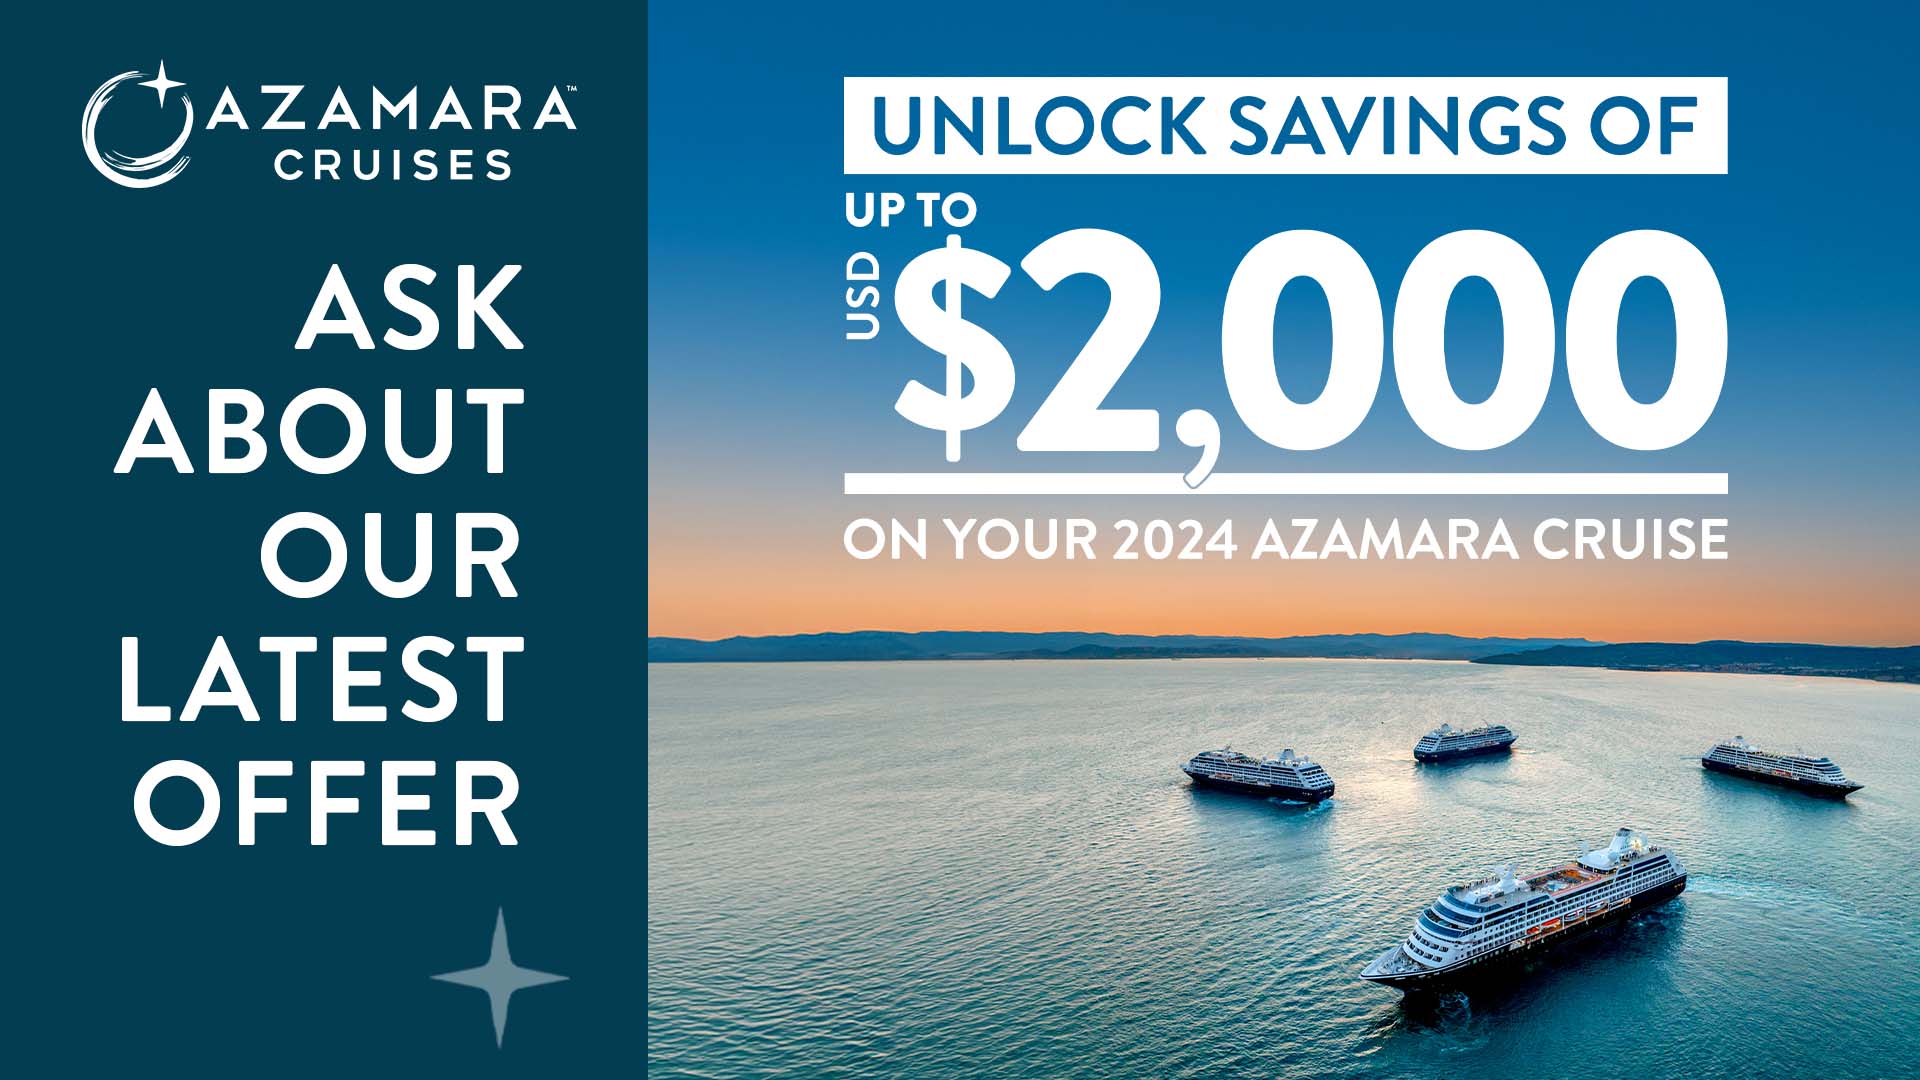 Travel Advisor Cruise Promotion for Azamara